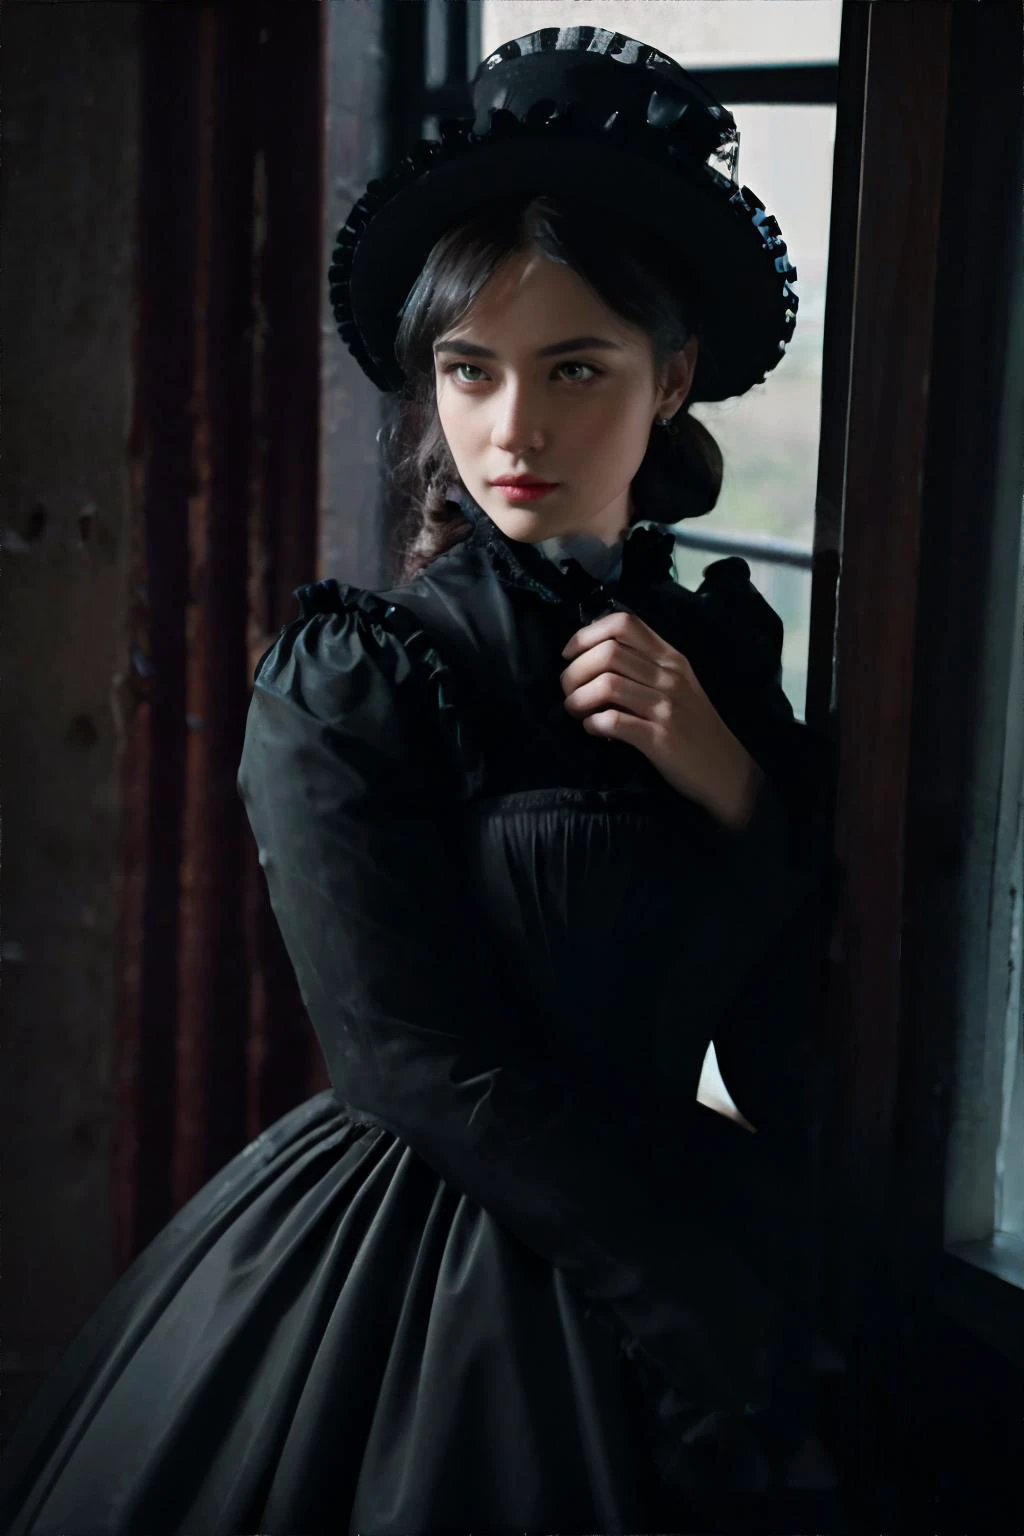 tema escuro, mulher usando vestido vitoriano, olhando pela janela || Obra de arte, qualidade perfeita, foco nitído, Profundidade superficial de campo, 8K